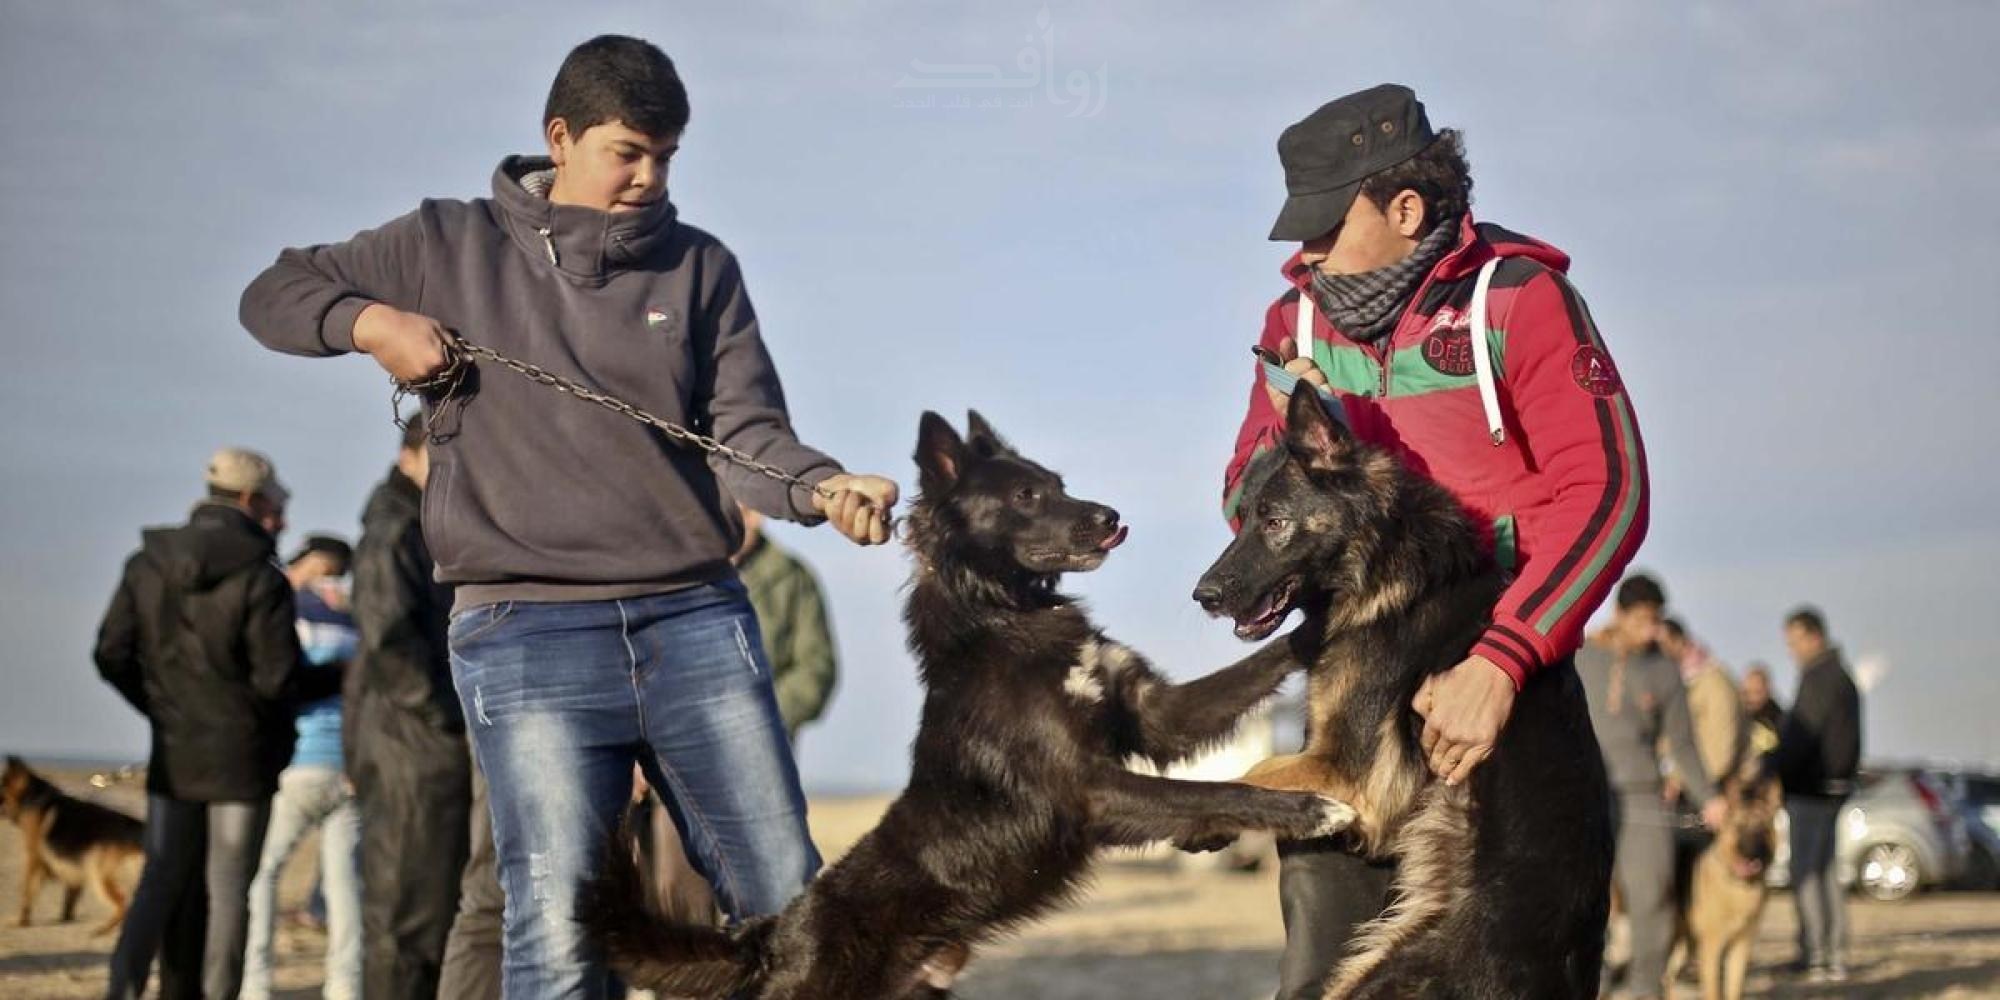  انتشار ظاهرة اصطحاب الكلاب للتحرش والمنظرة فى شوارع الحامول بكفر الشيخ